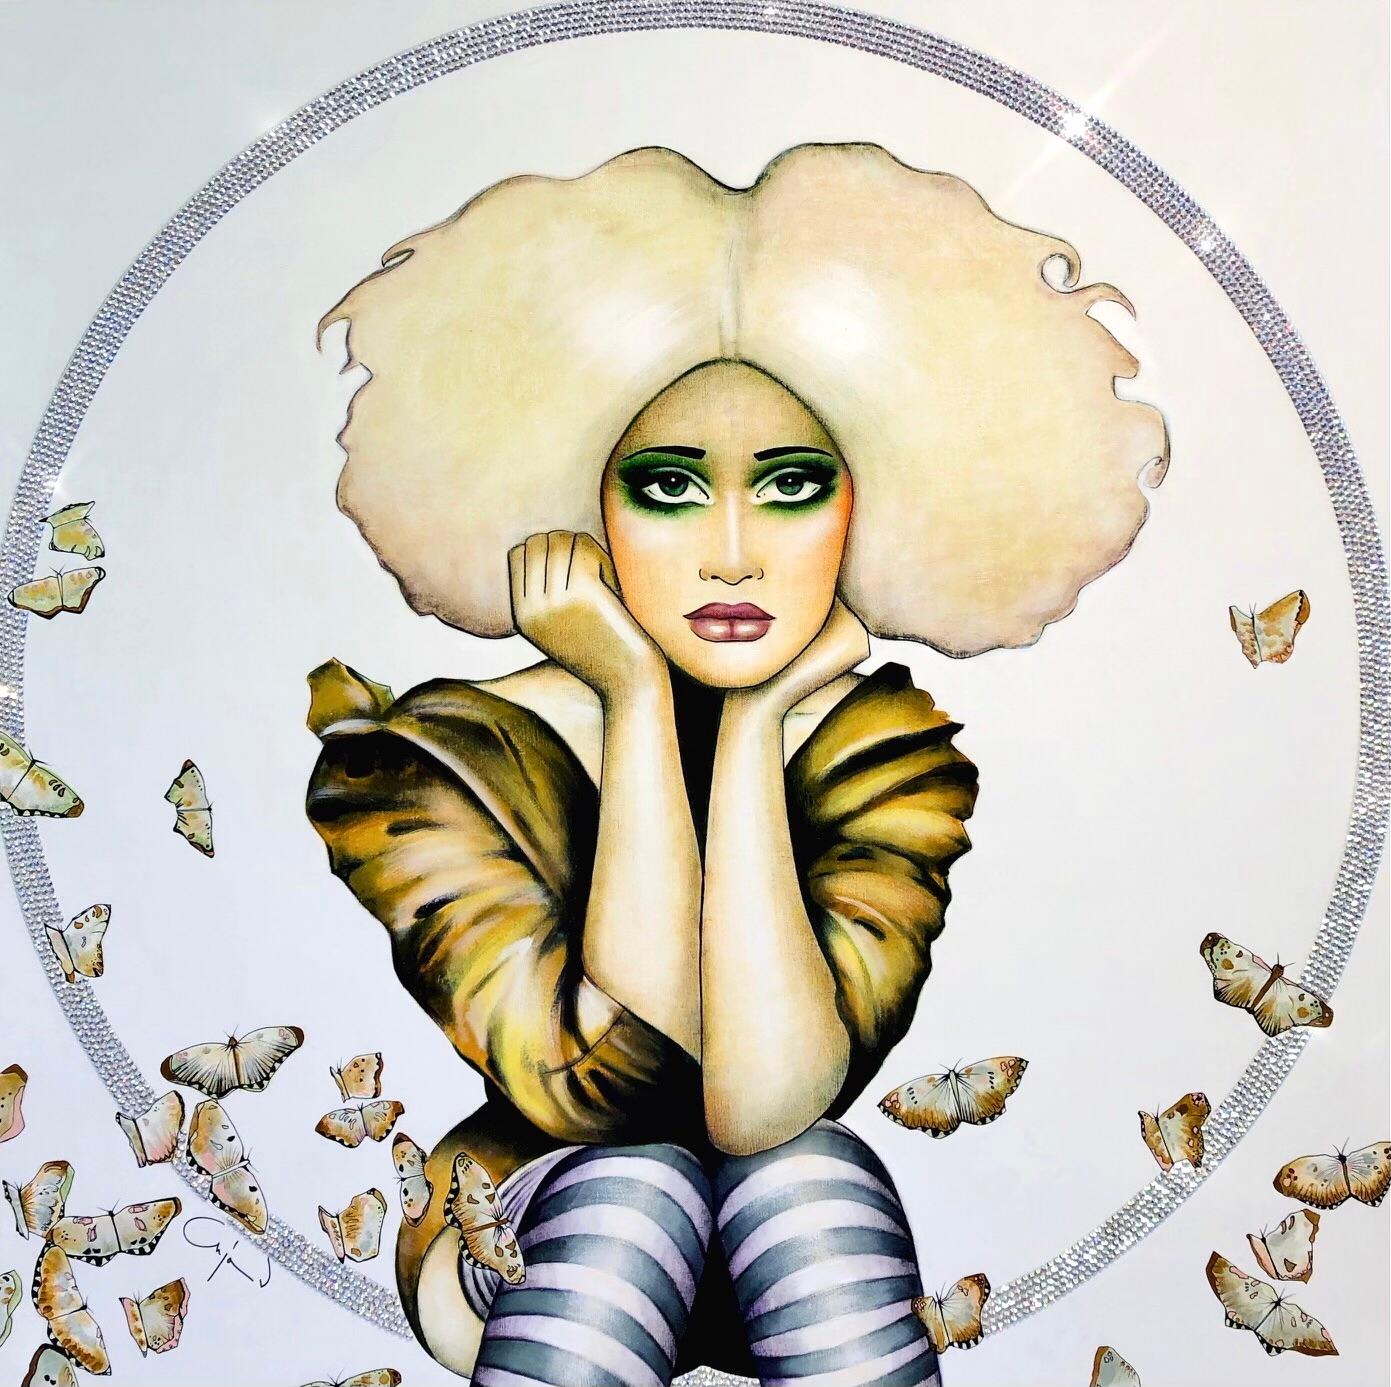 ANJA VAN HERLE
"Fly High Butterfly"
Acrylique et cristal Swarovski sur panneau
36 x 36 pouces

Née en Belgique en 1969, Anja Van Herle associe dans ses œuvres un sens européen de la haute couture à un sens américain de l'émerveillement. Les années